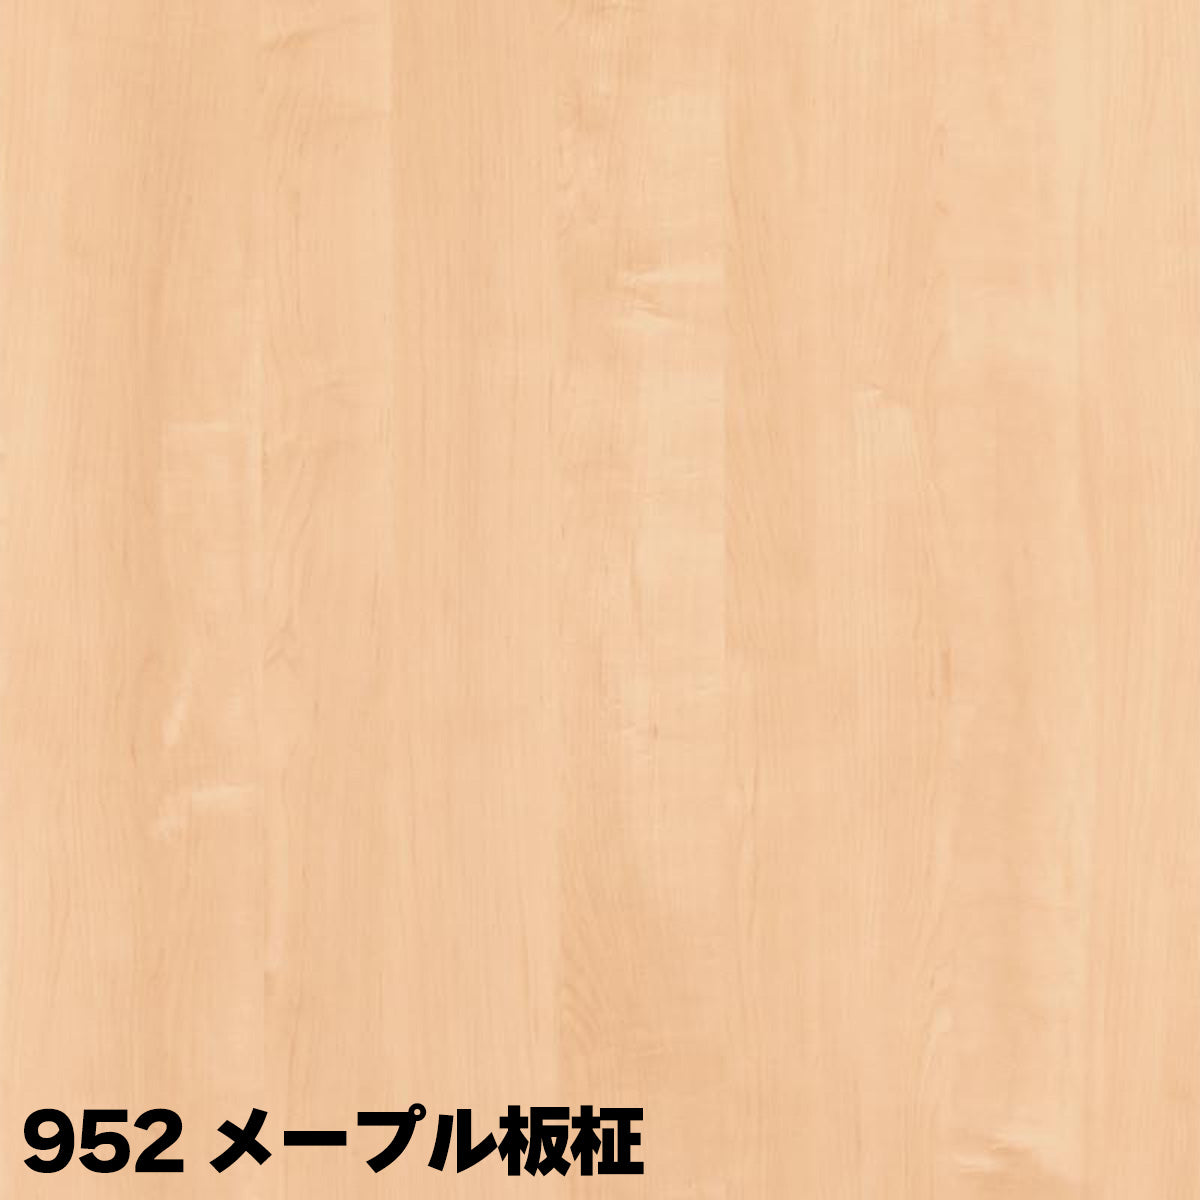 厚さ21mm ランバーポリ 木目調6色 オーダーカット 木口テープ選択可能